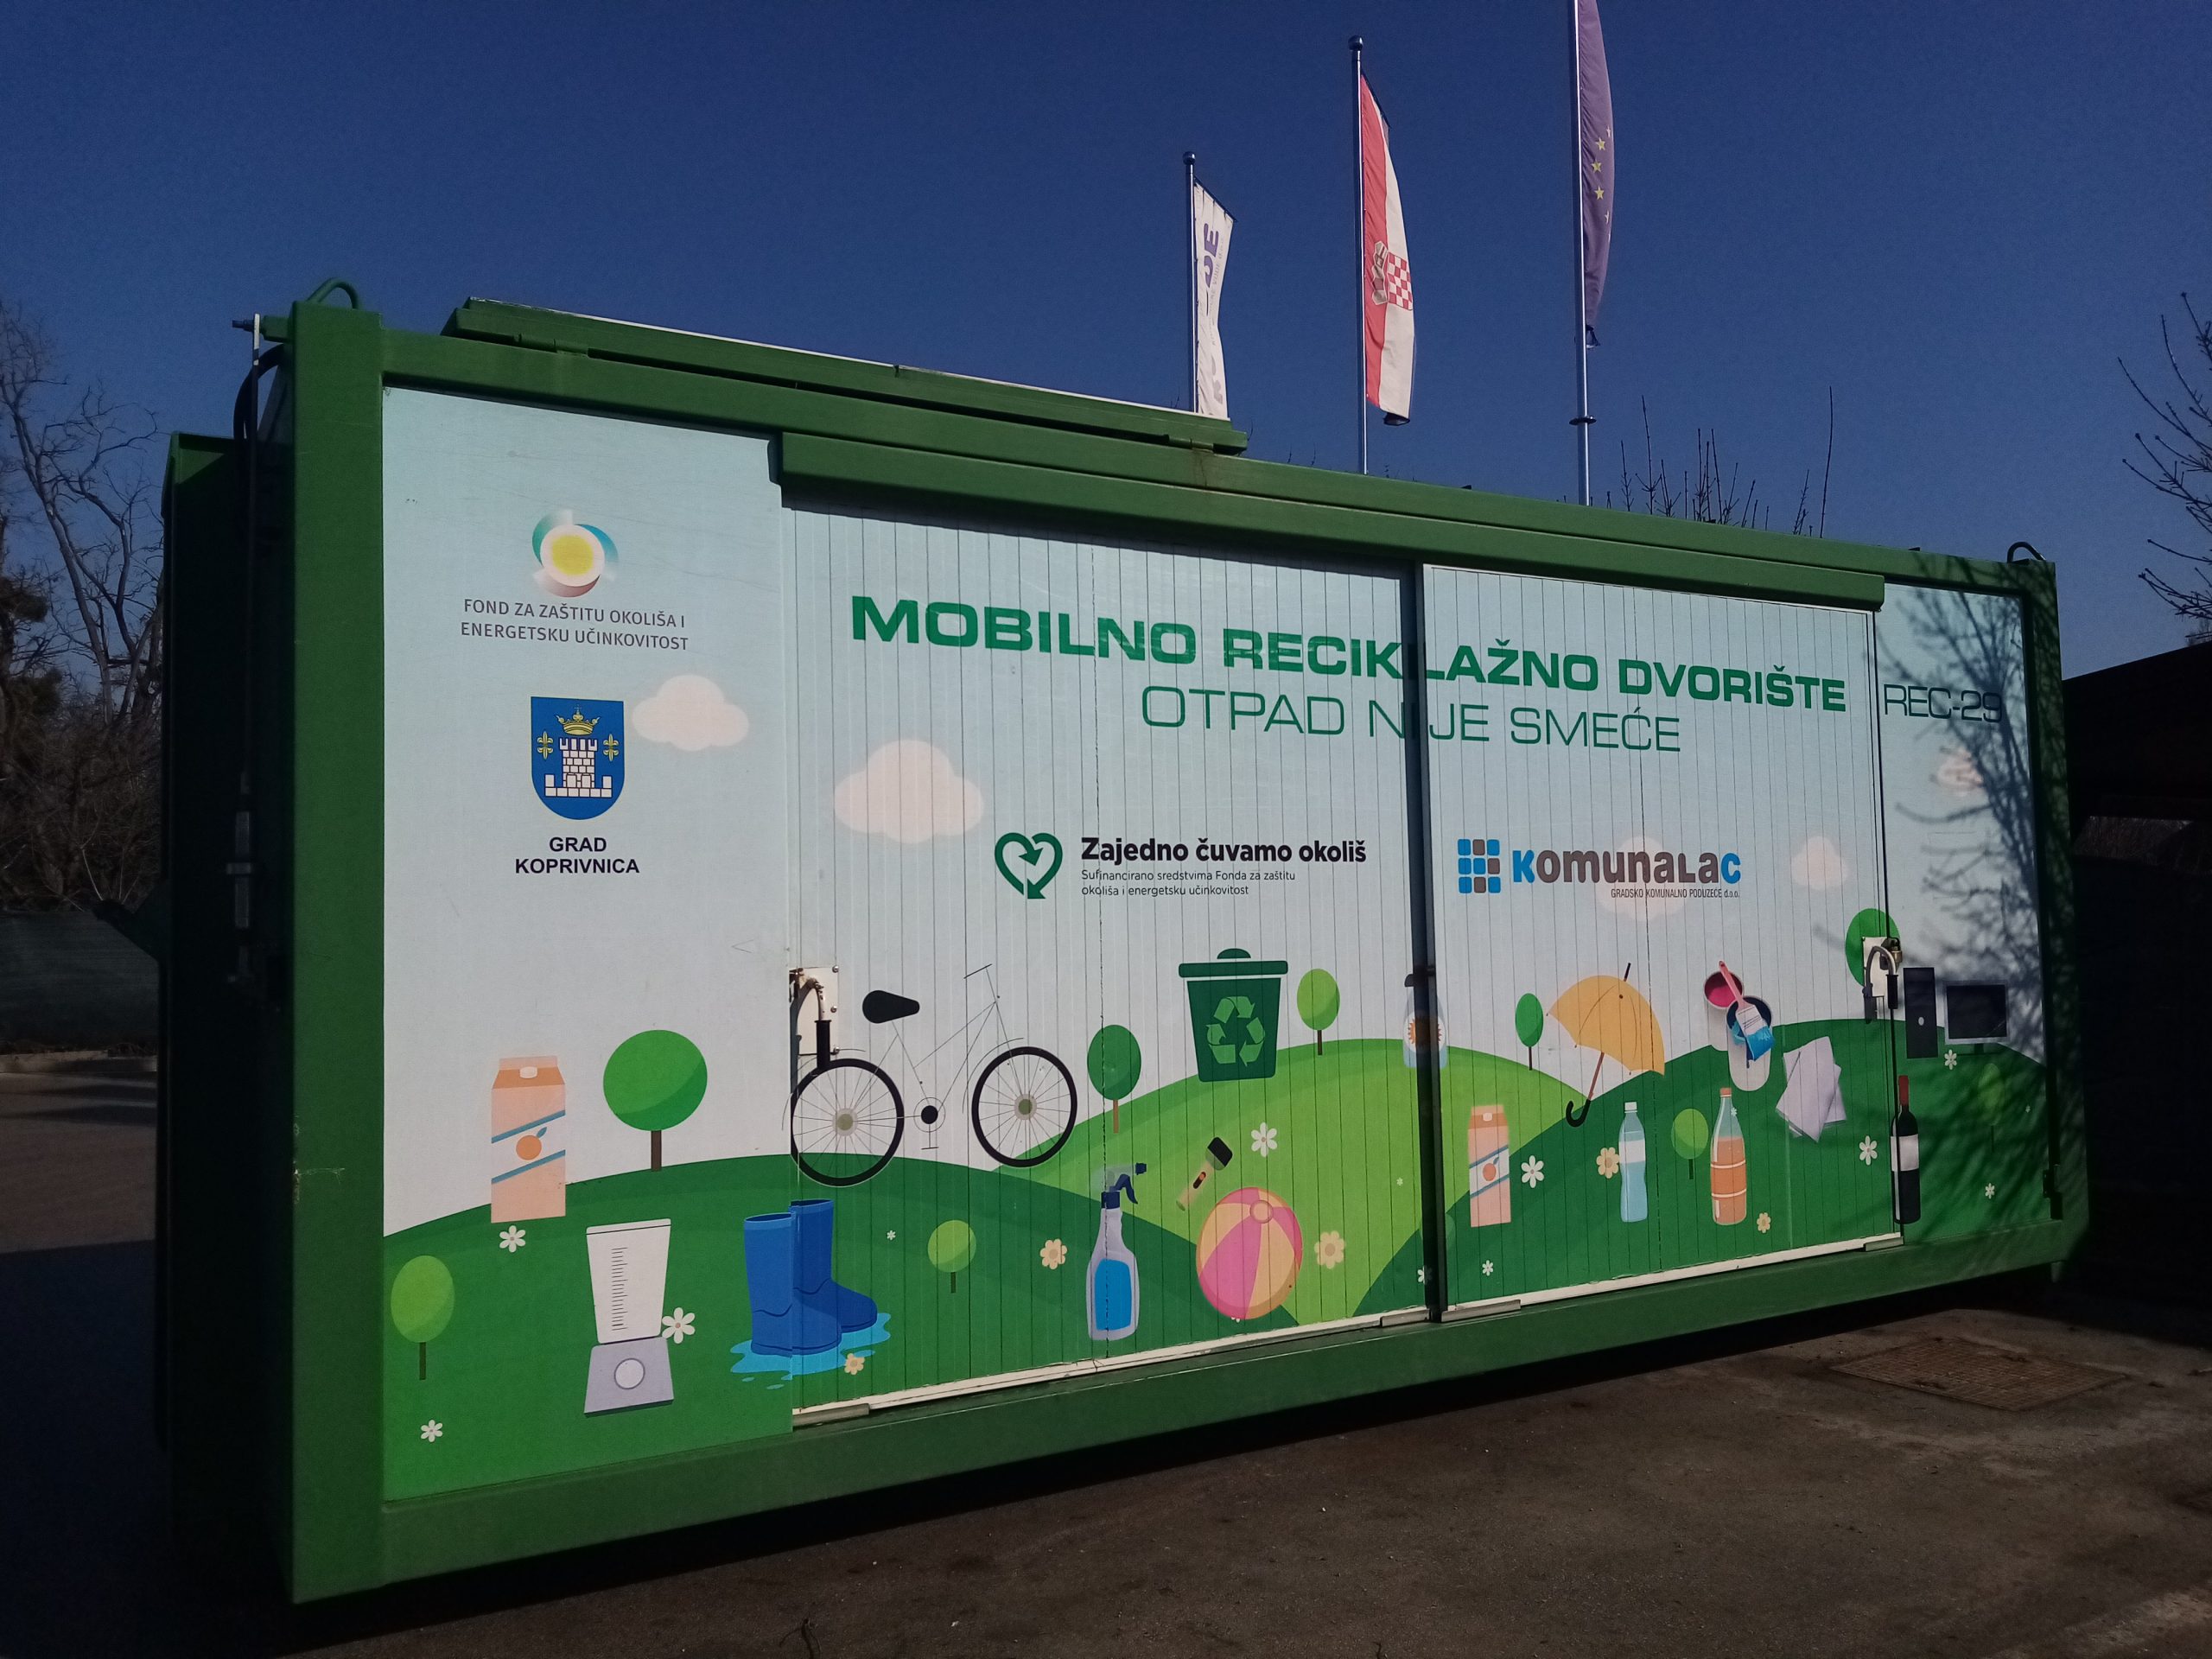 Mobilno reciklažno dvorište u četvrtak, 10. ožujka, nalazit će se na Vinici kod društvenog doma